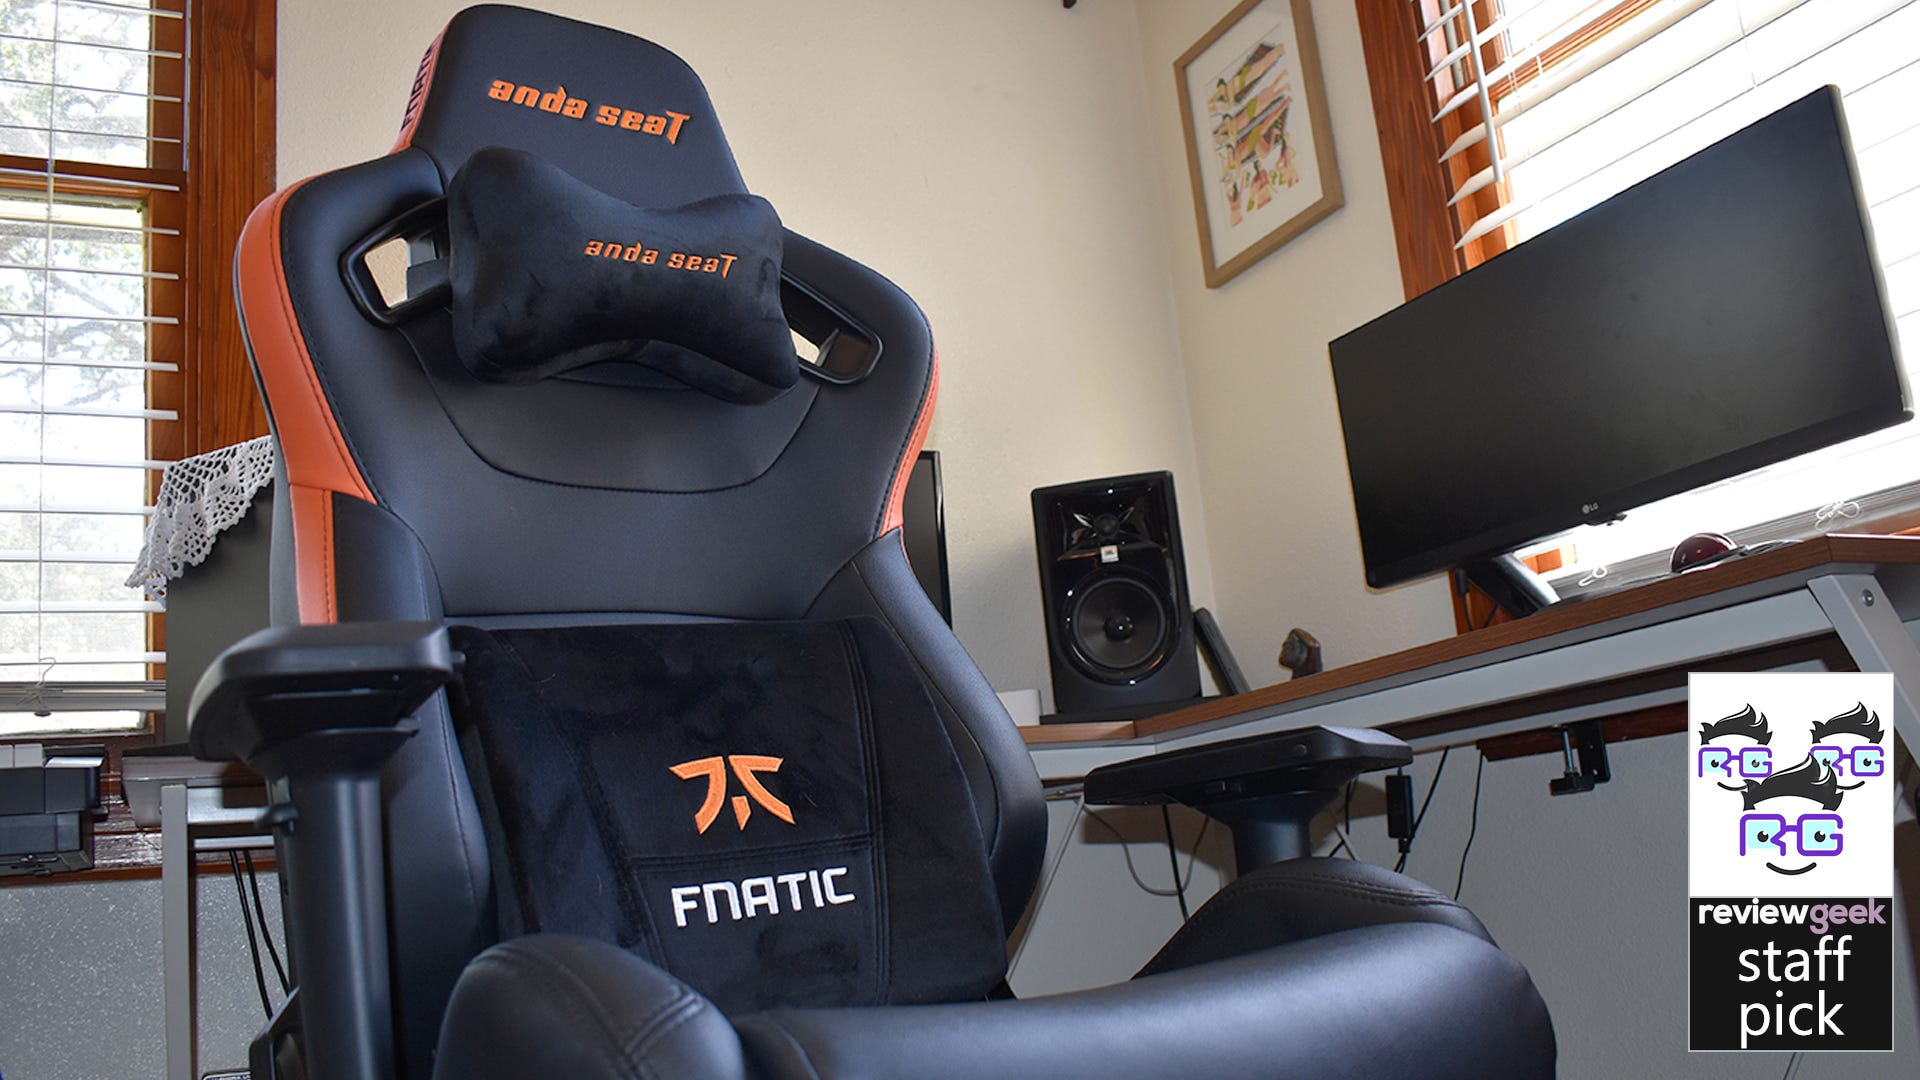 Đánh giá Anda Seat Fnatic Edition: Một chiếc ghế chơi game rất lớn, rất thoải mái